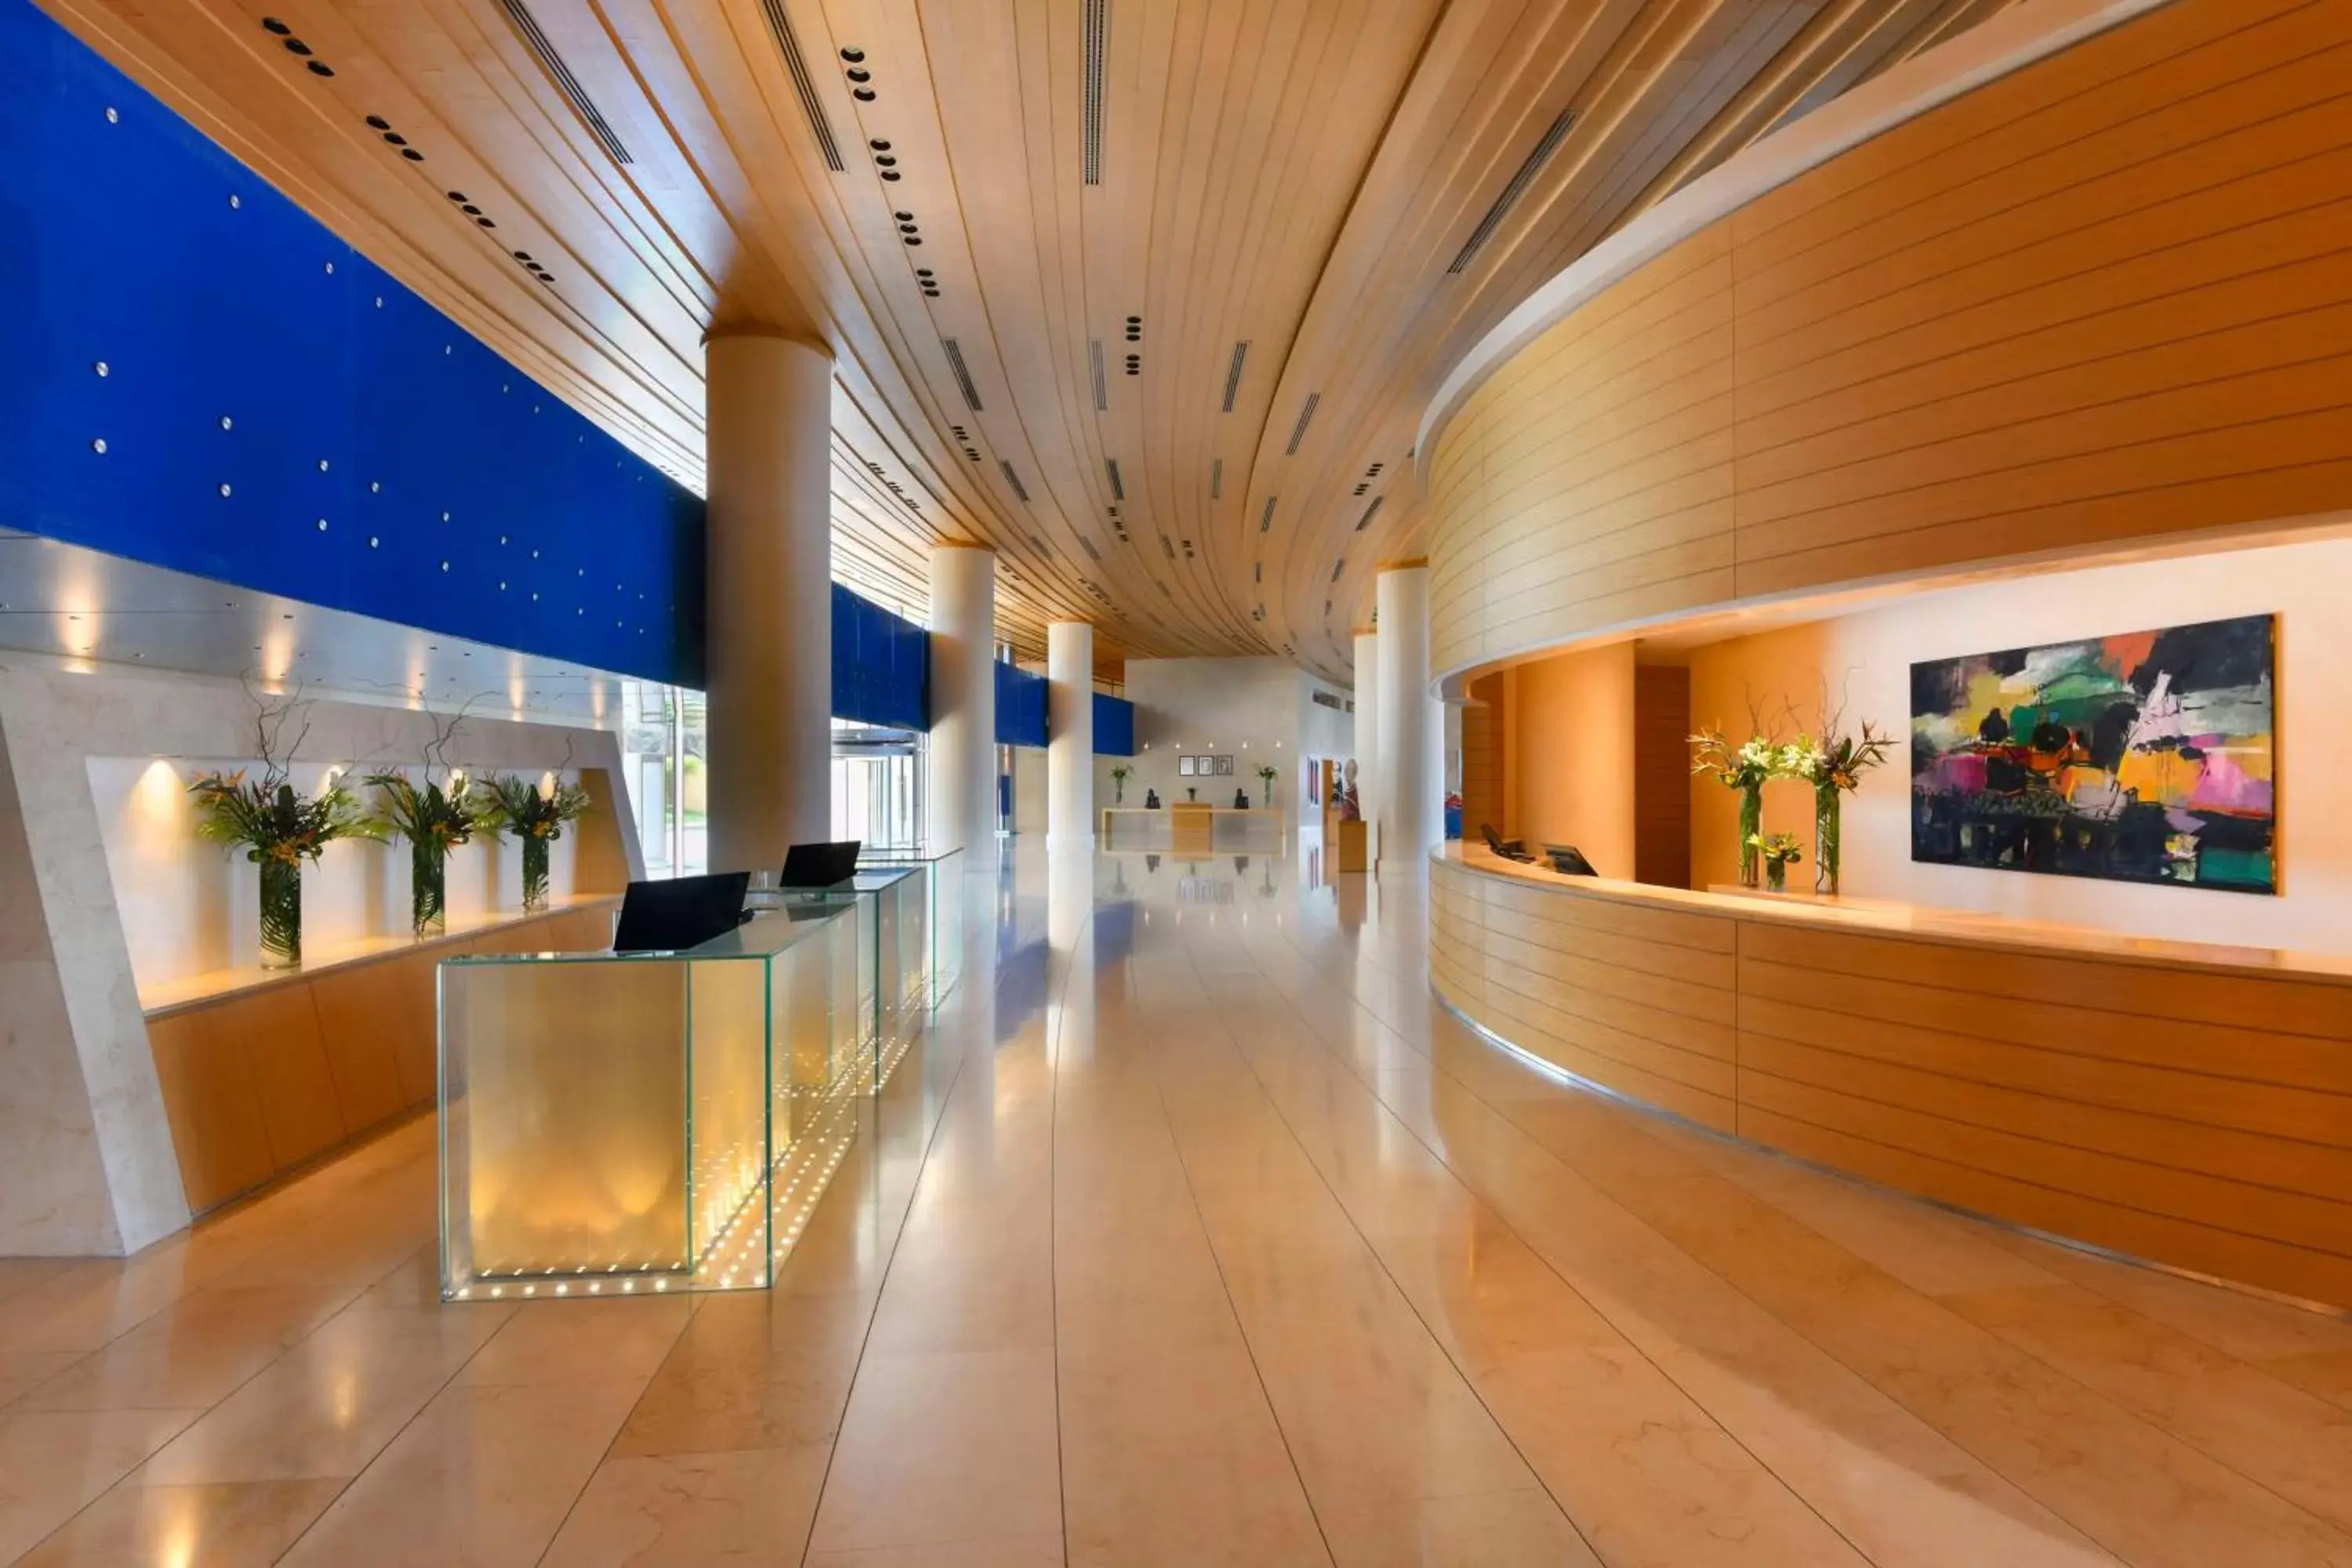 Lobby or reception in Kempinski Hotel Aqaba